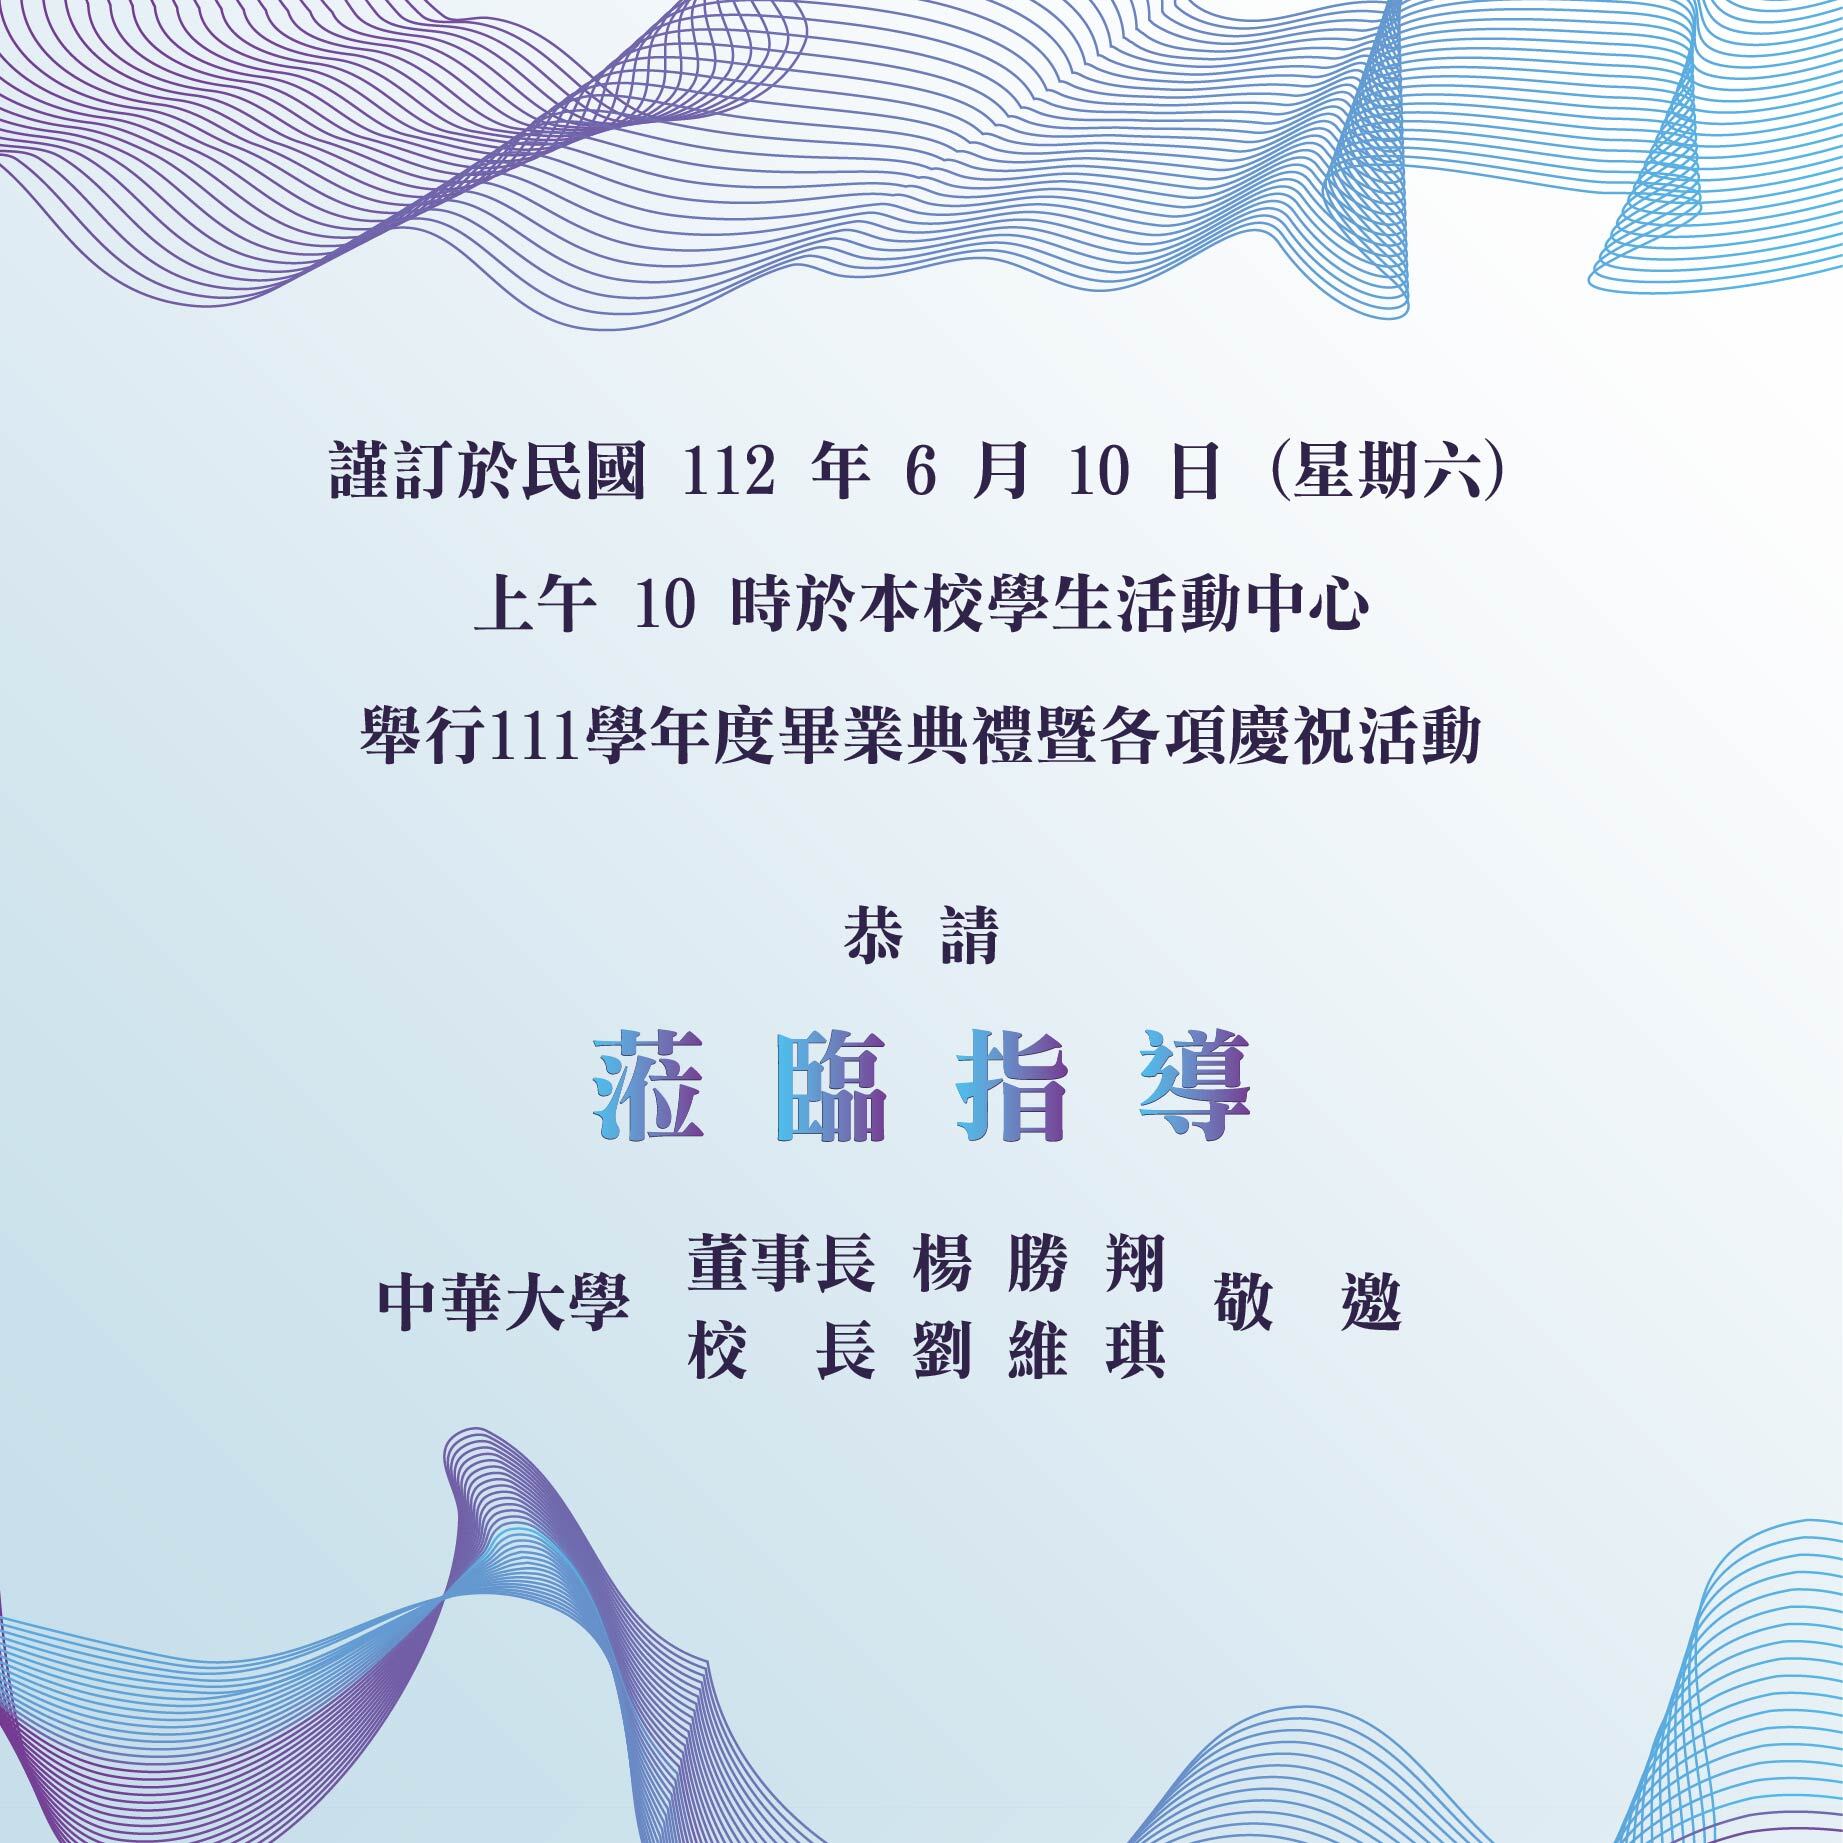 中華大學111學年度畢業典禮邀請卡